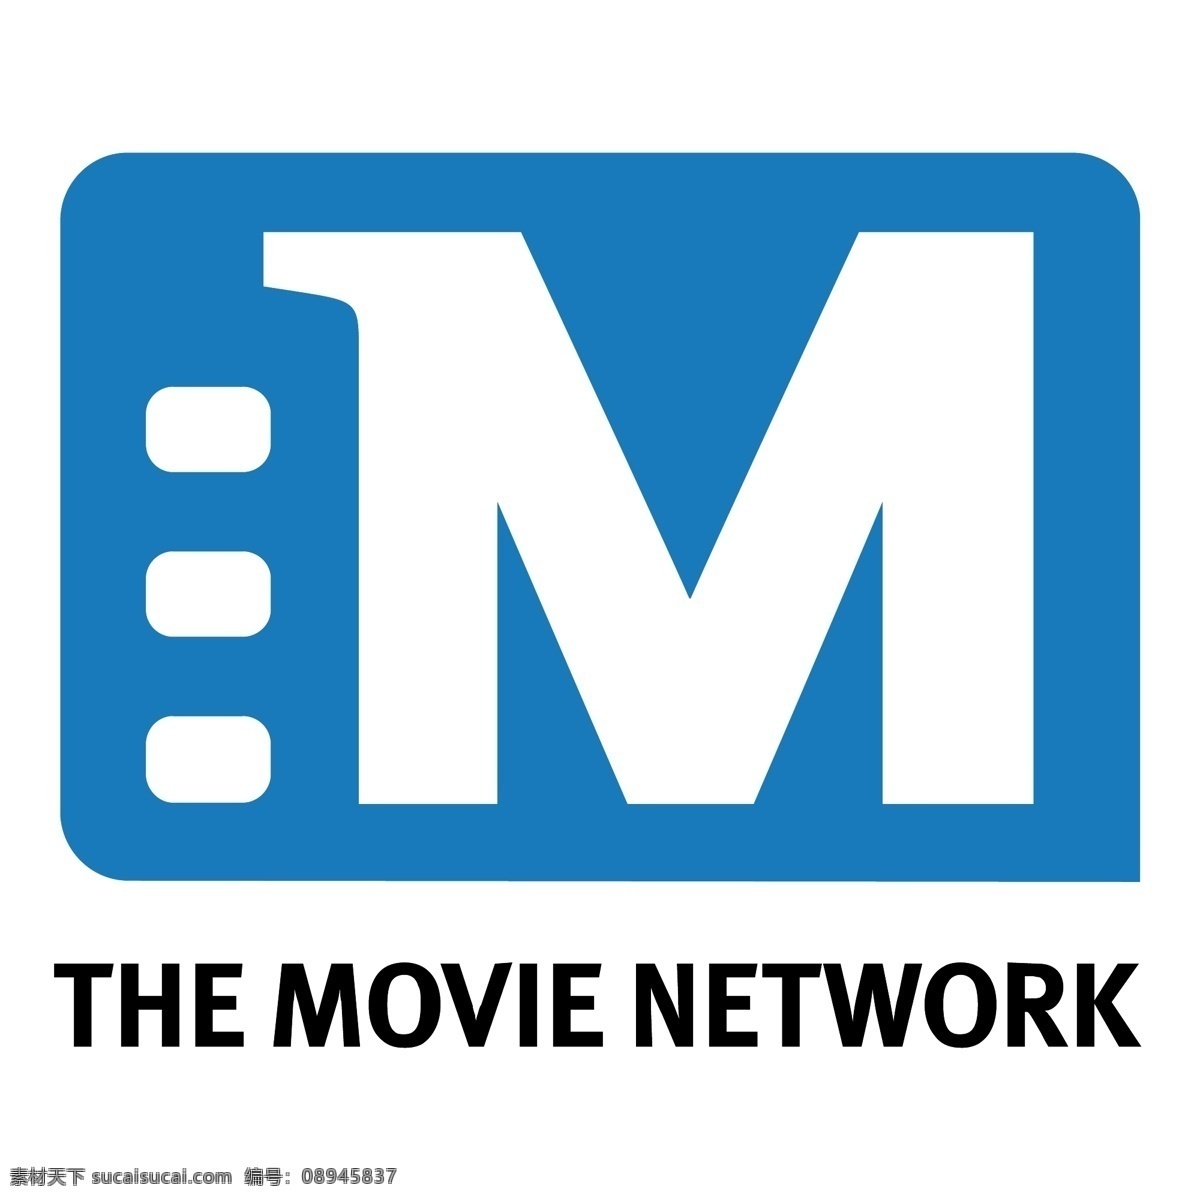 电影网 免费 logo 下载电影 网络 标识 psd源文件 logo设计